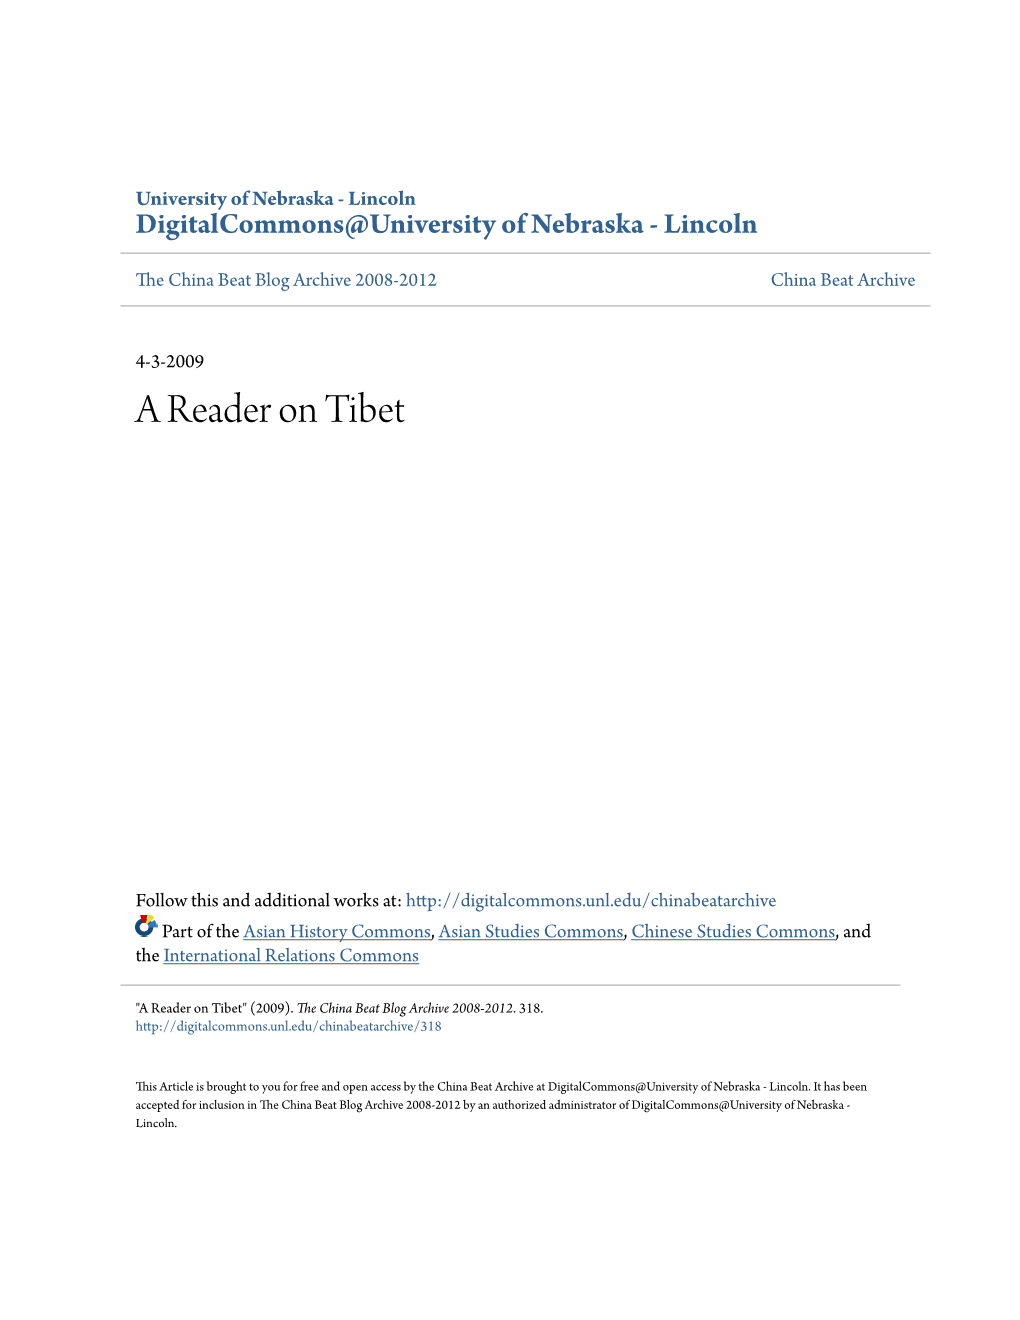 A Reader on Tibet